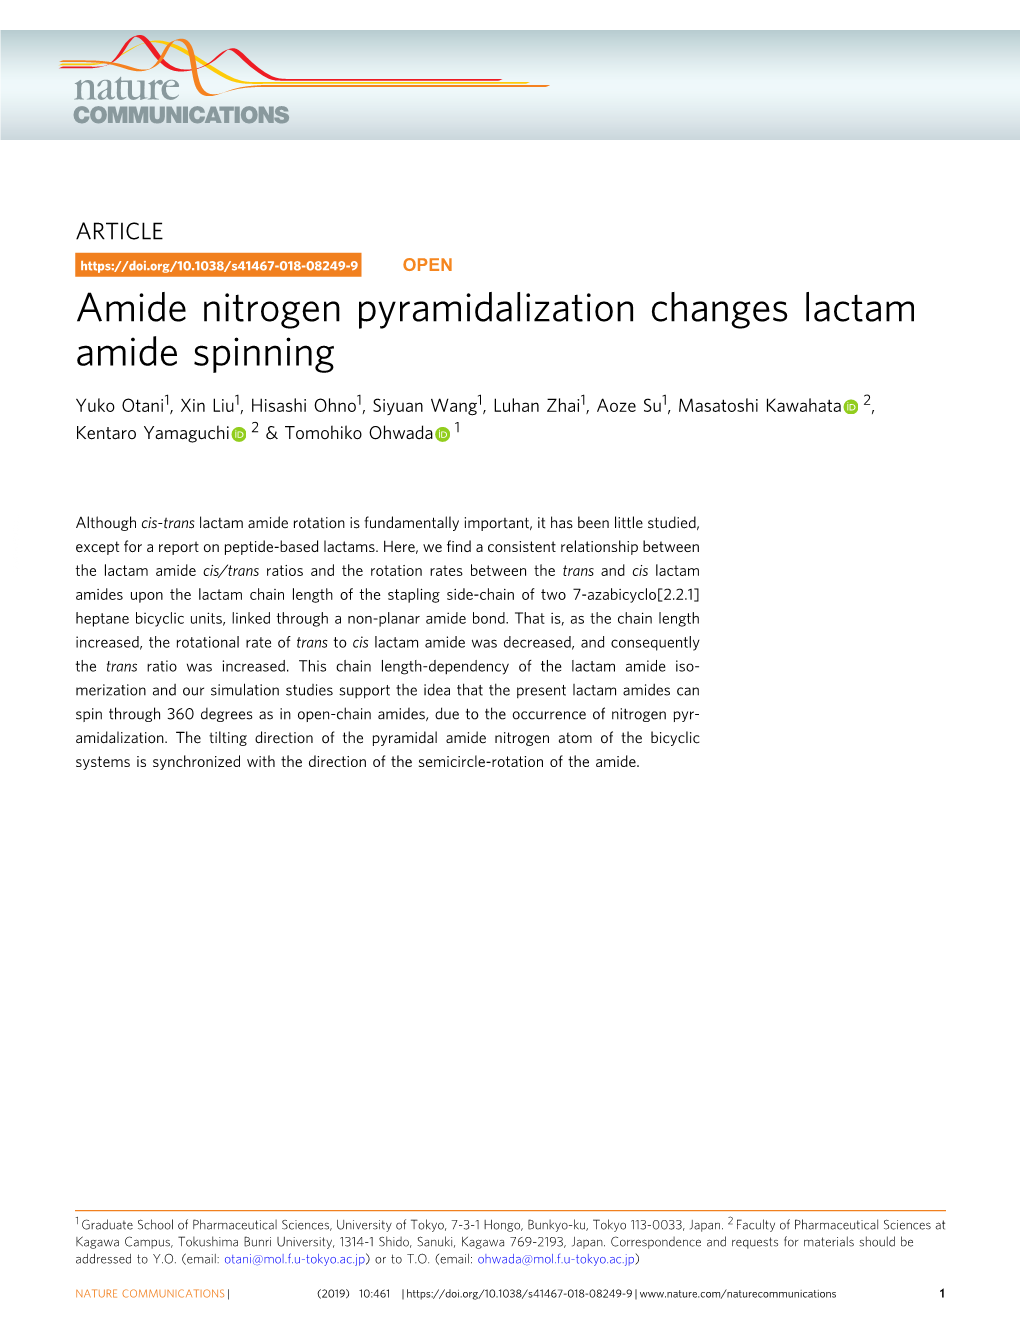 Amide Nitrogen Pyramidalization Changes Lactam Amide Spinning